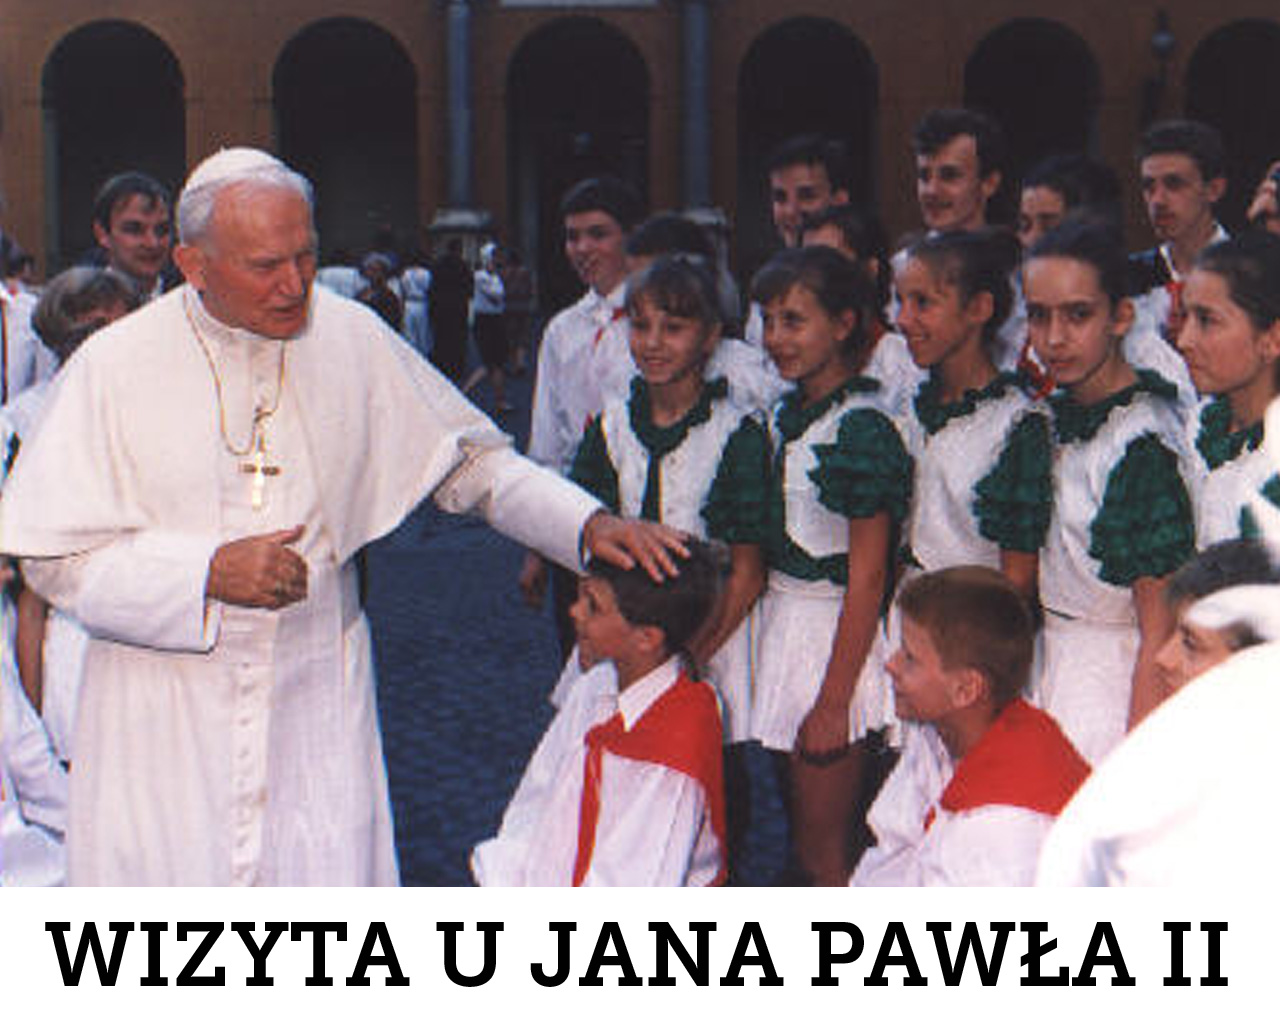 Wizyta u Jana Pawła II, Watykan, 1991 r.